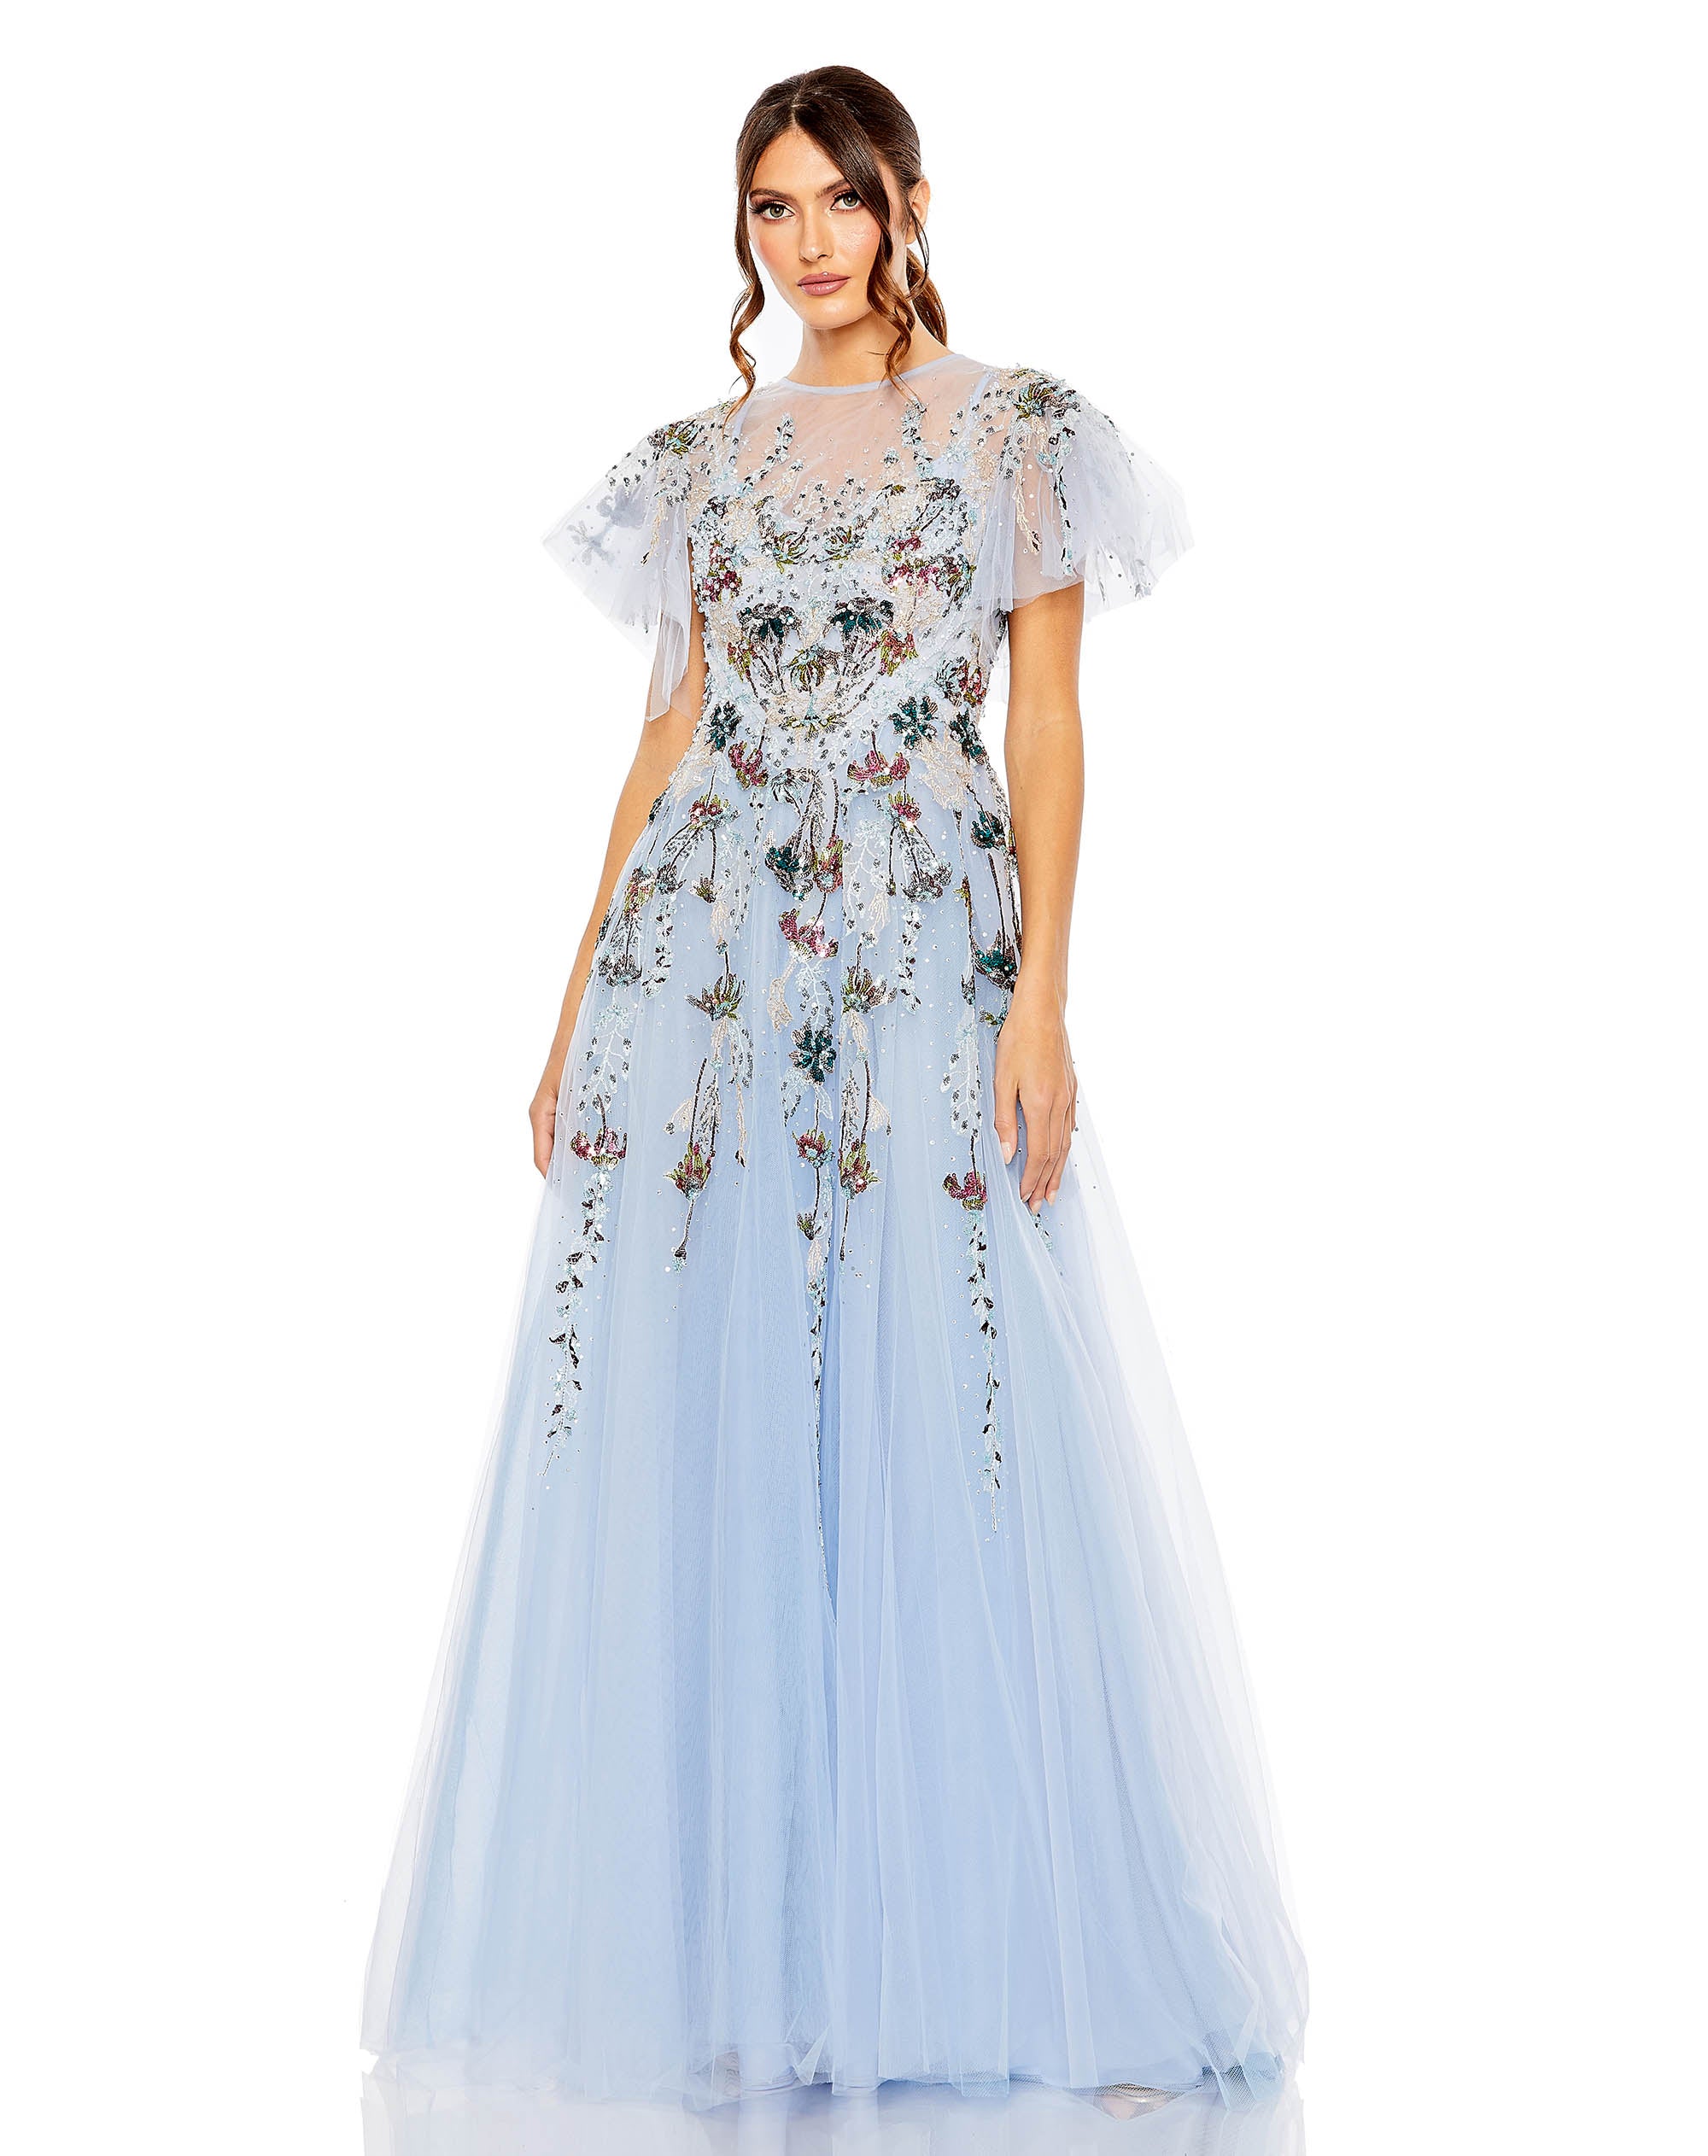 Embellished Multi Color Flutter Sleeve A-Line Dress